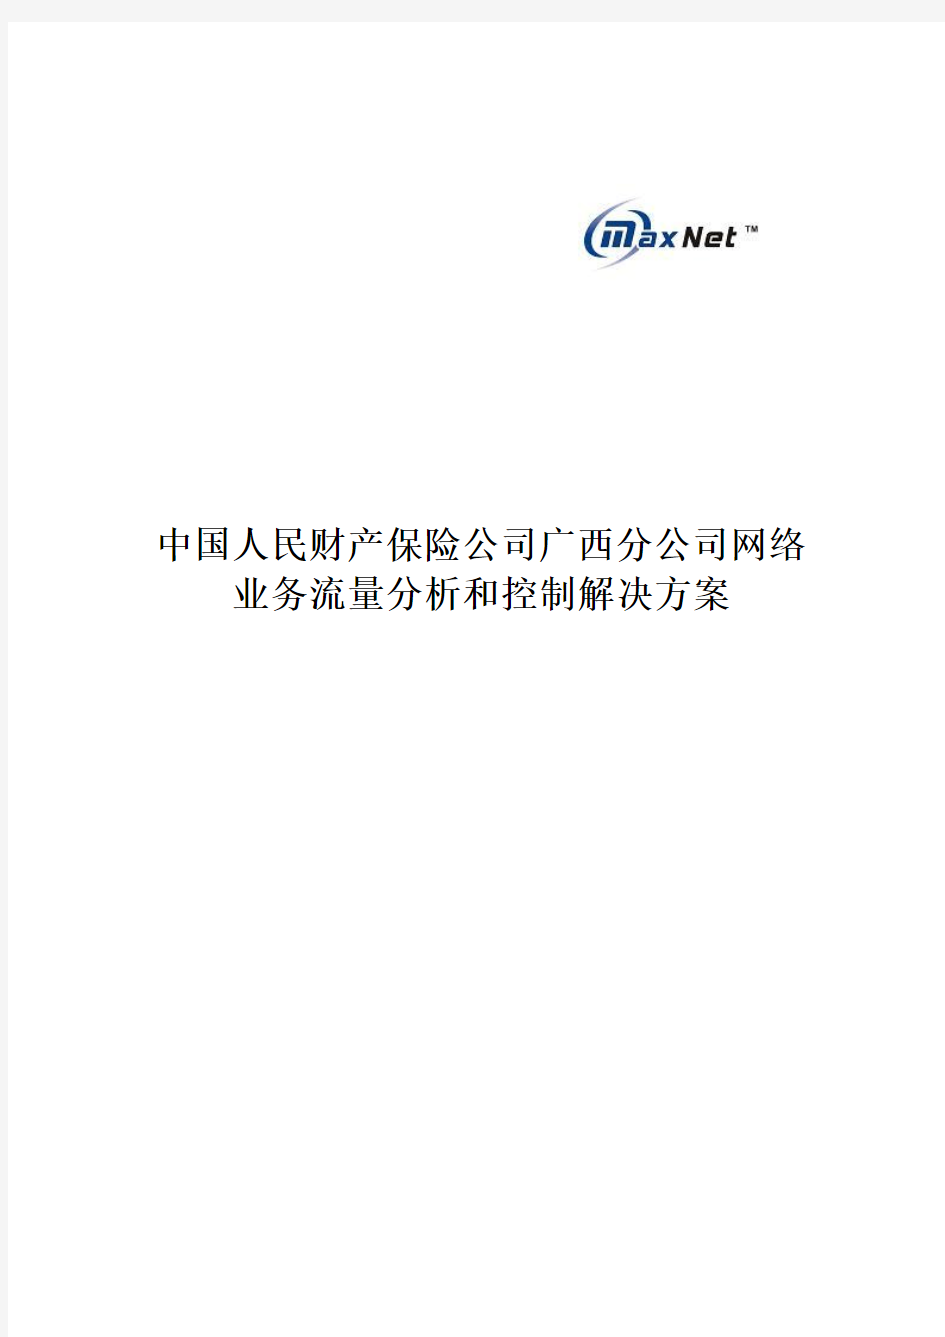 中国人民财产保险公司广西分公司网络业务流量分析和控制解决方案